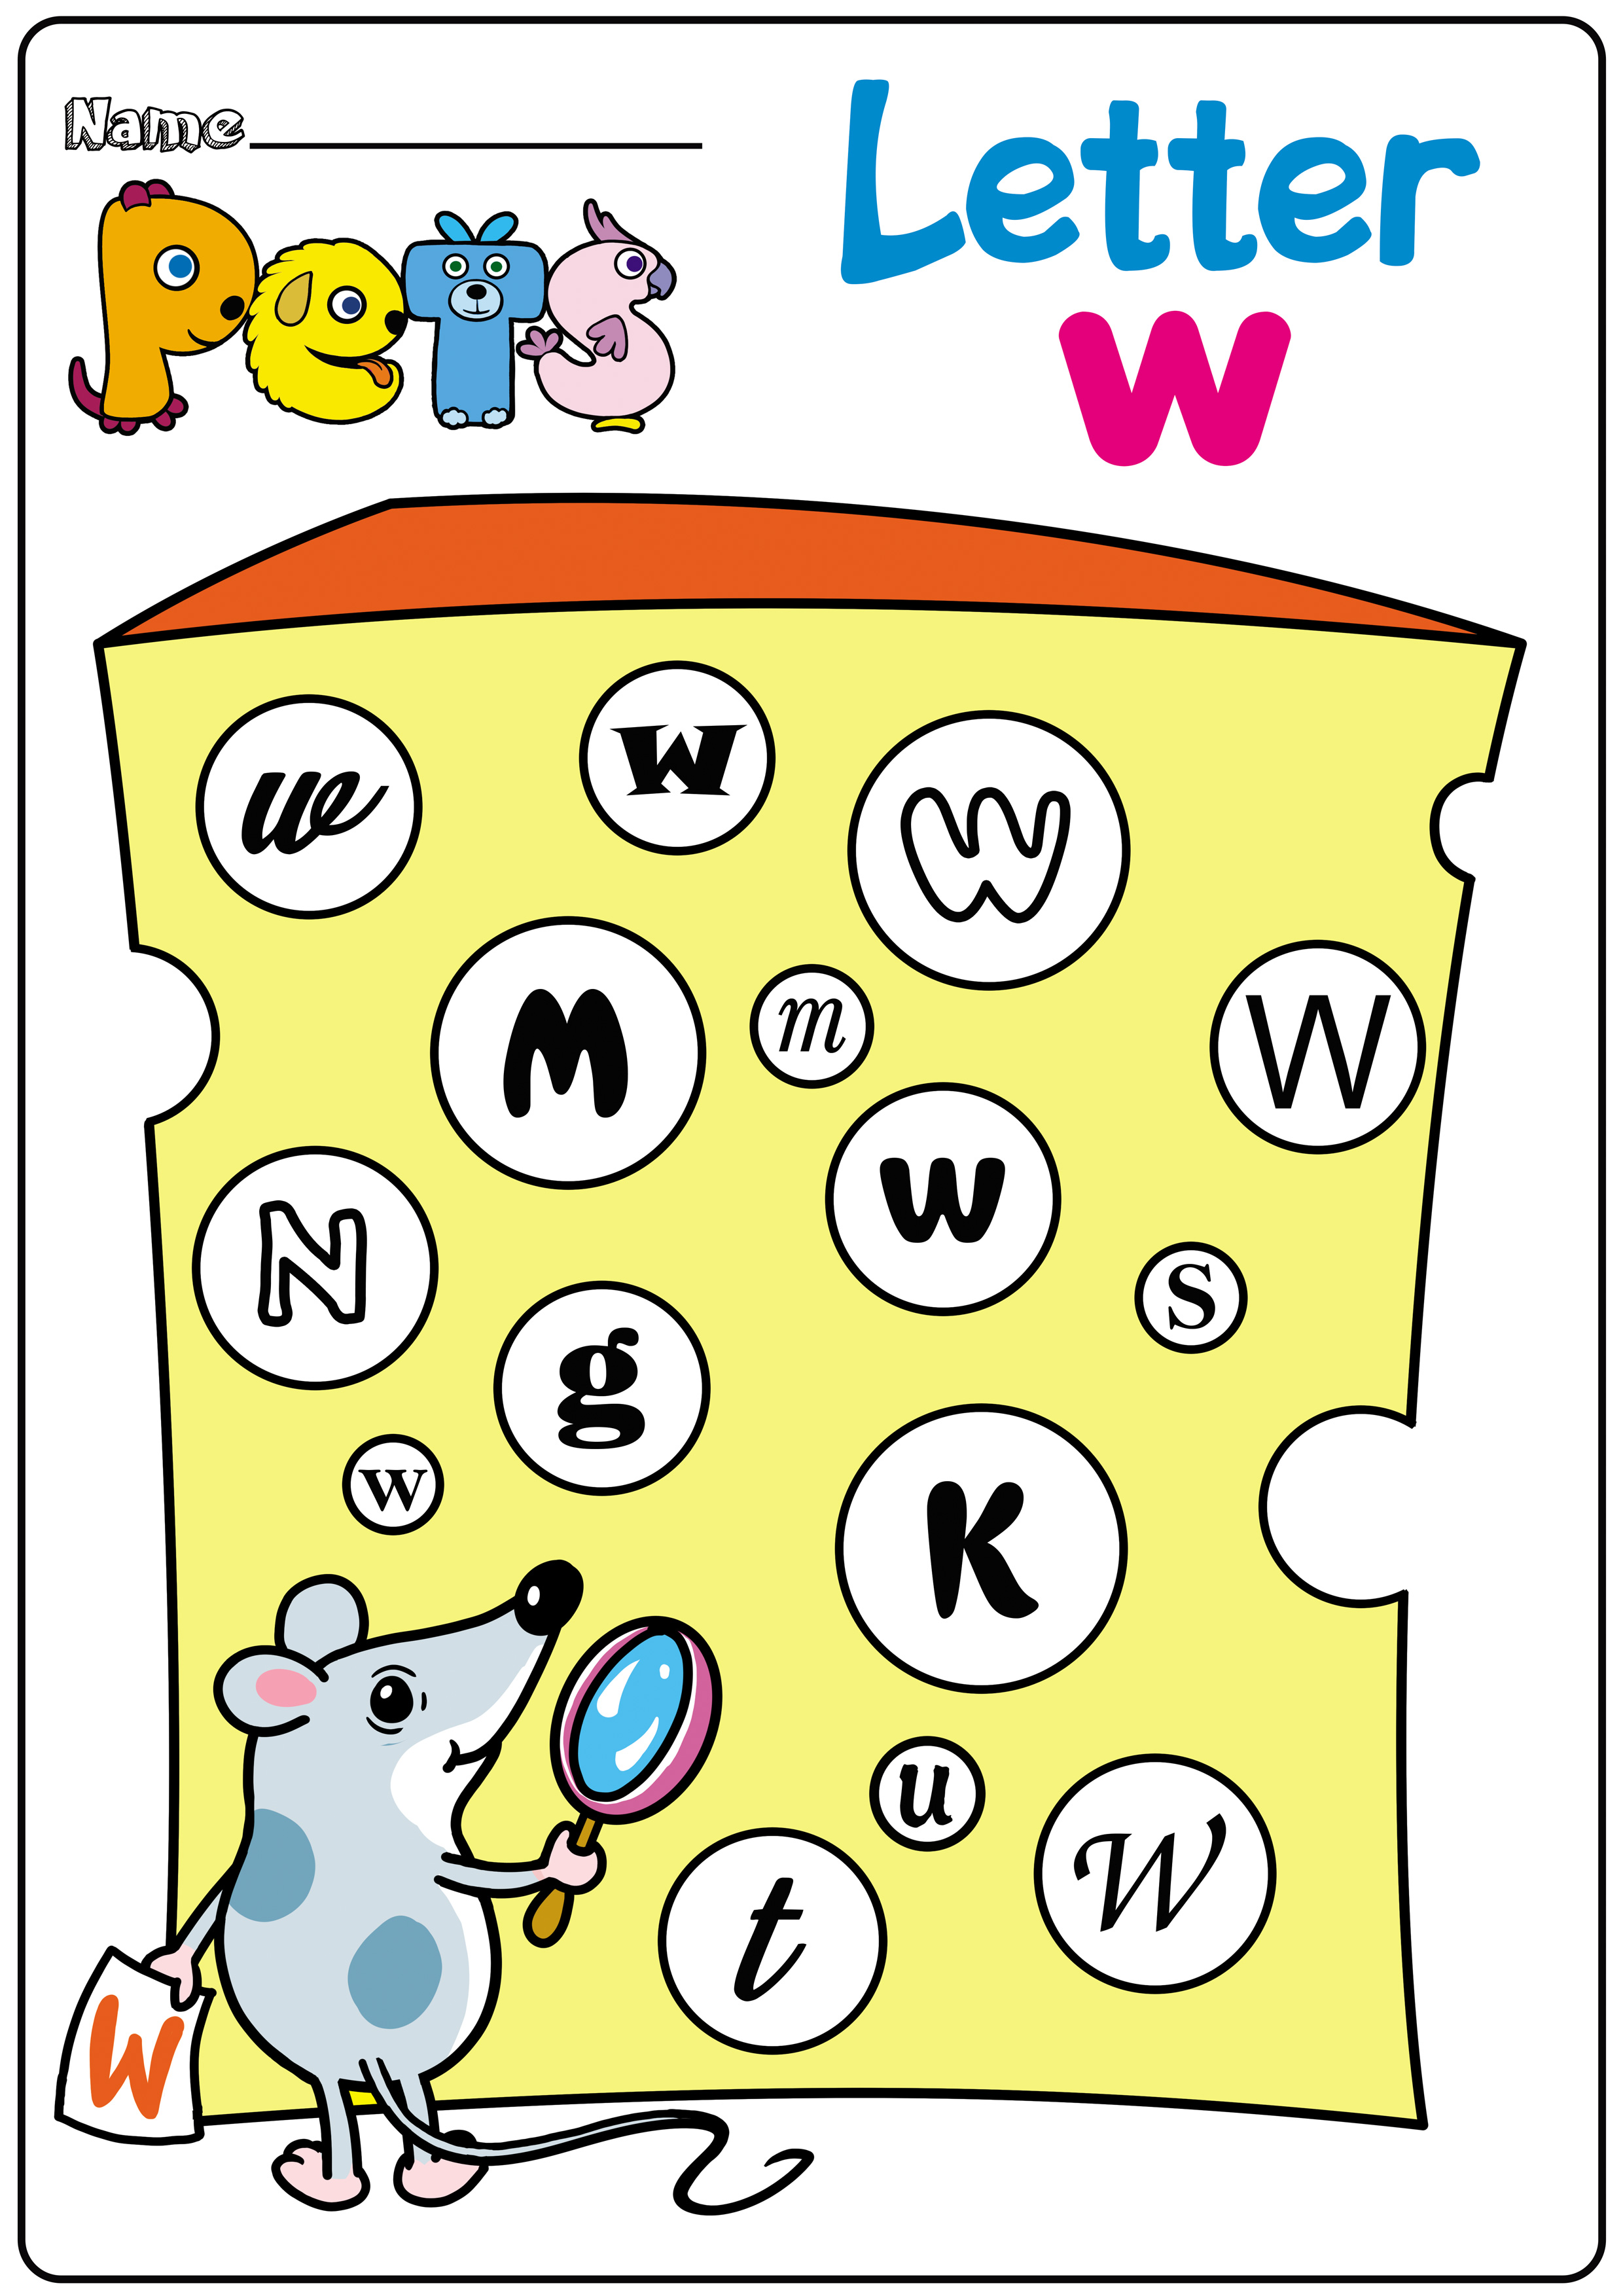 pet-worksheets-and-activities-for-kindergarten-teachersmag